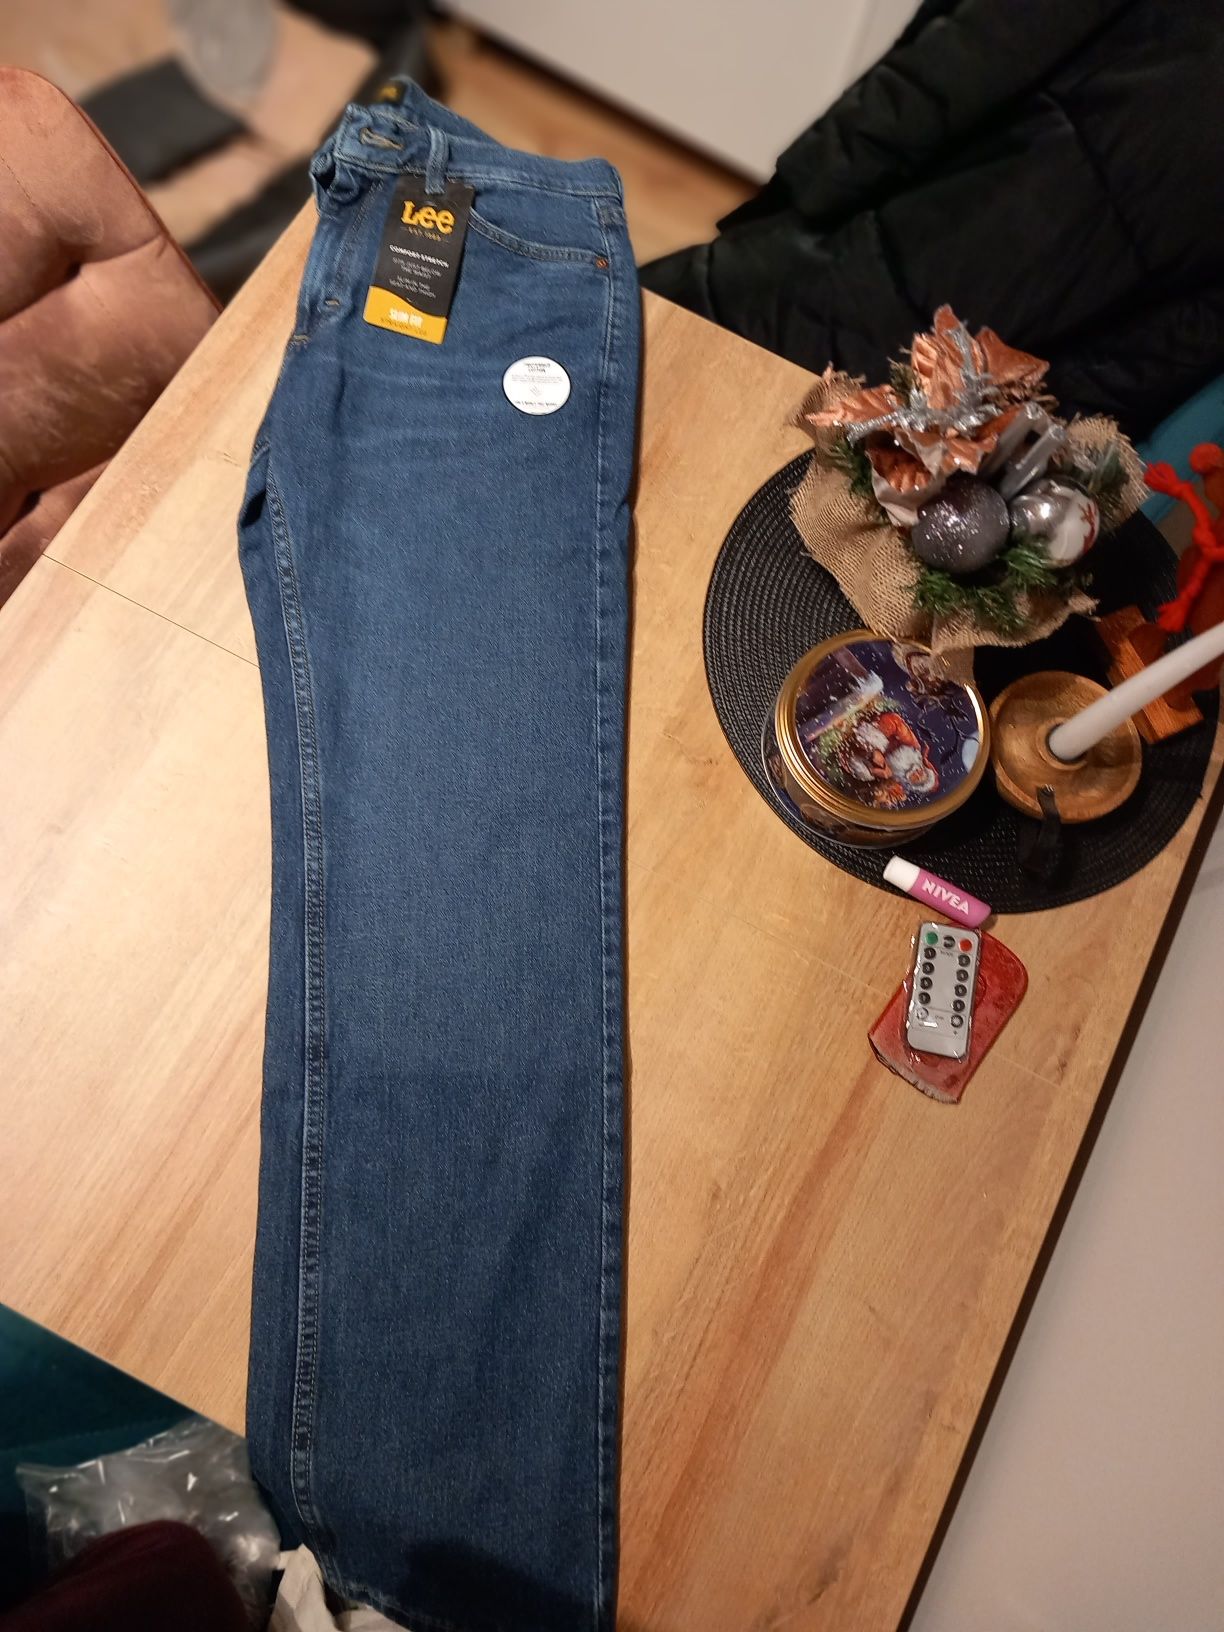 Jeansy LEE, model Legendary Slim, rozmiar W31 L32, spodnie